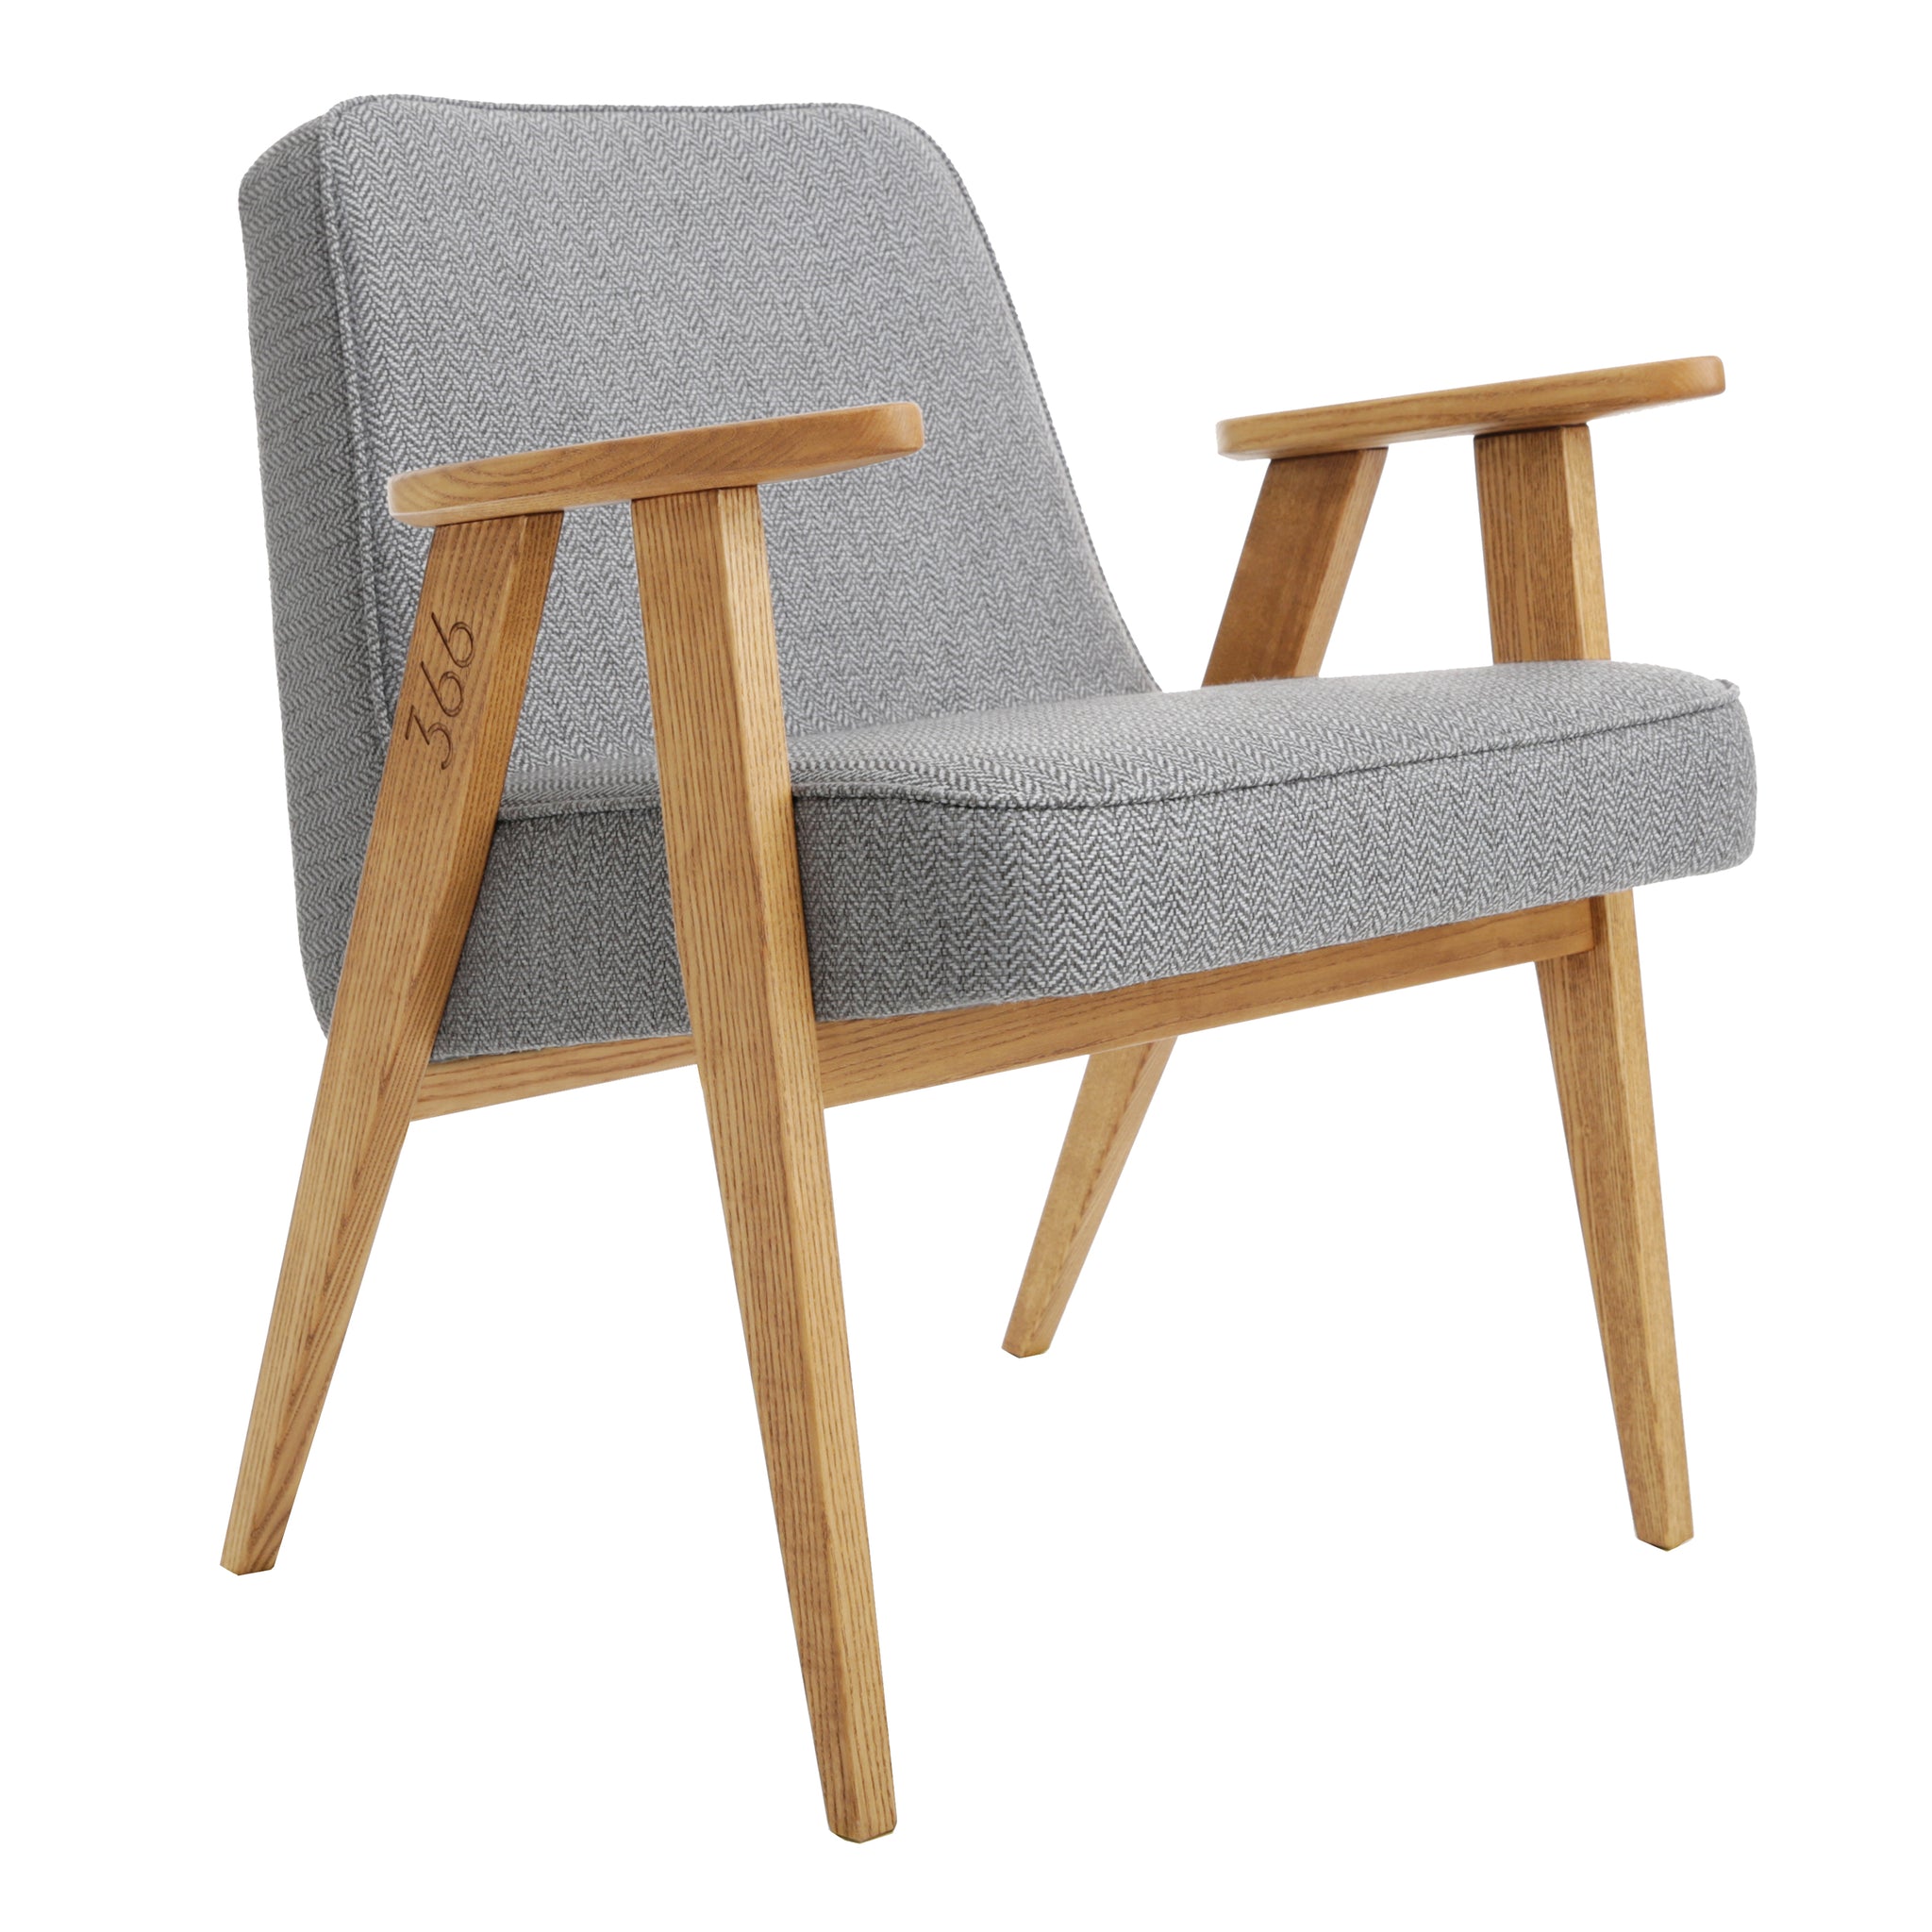 Model 366 Arm Chair by Józef Chierowski / GREY TWEED